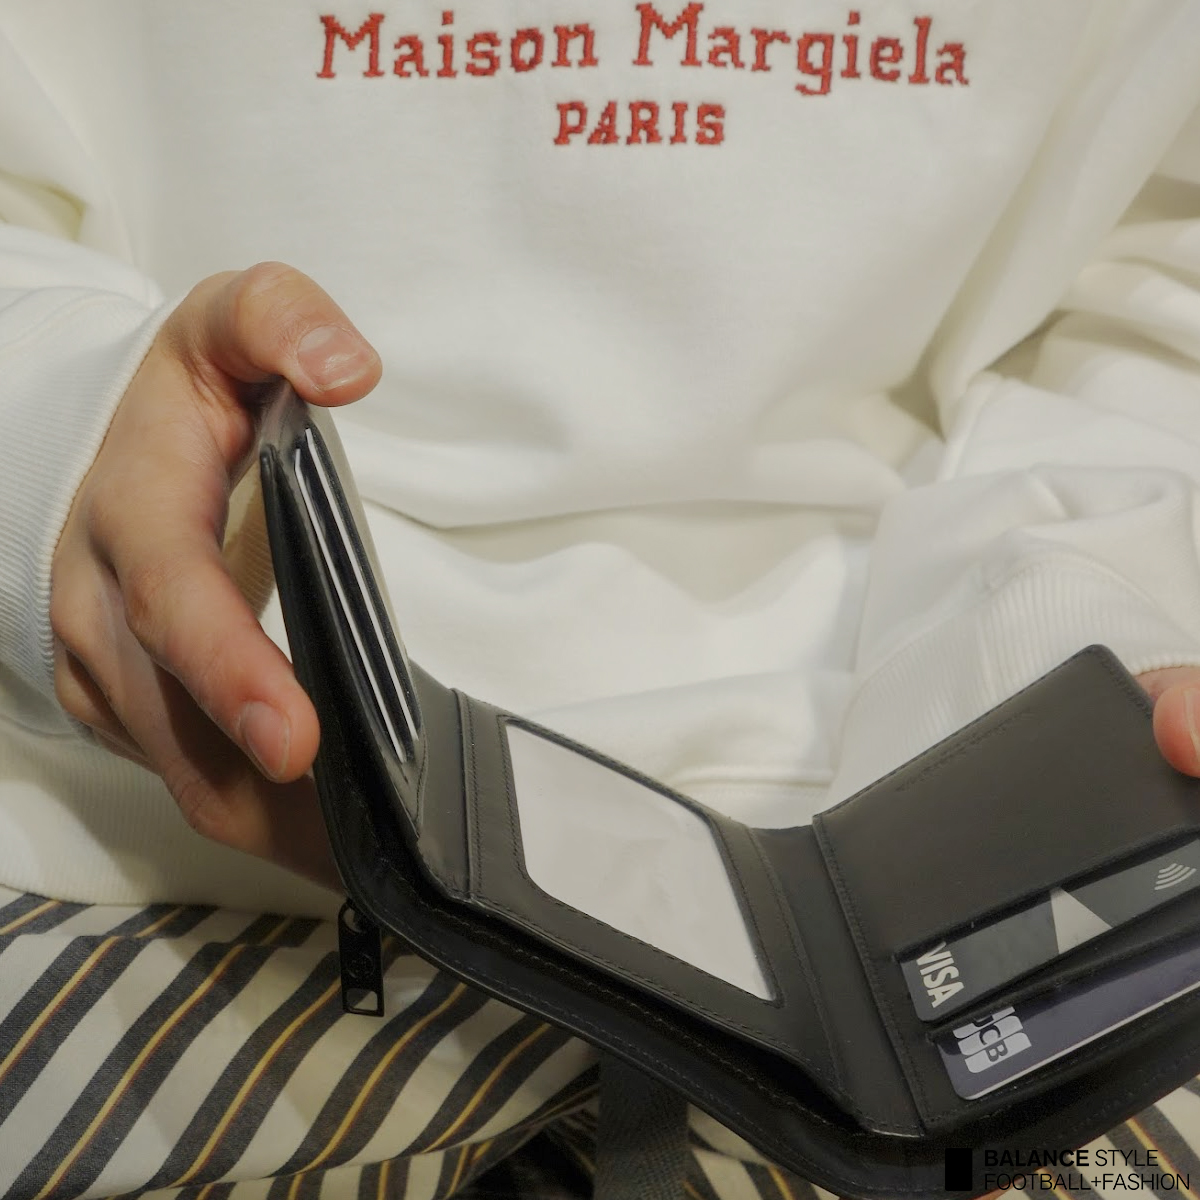 素材感の違いで差をつけるMaison Margielaの財布紹介Vol.2！ – バランスタイムズ | サッカーのあるファッションライフ